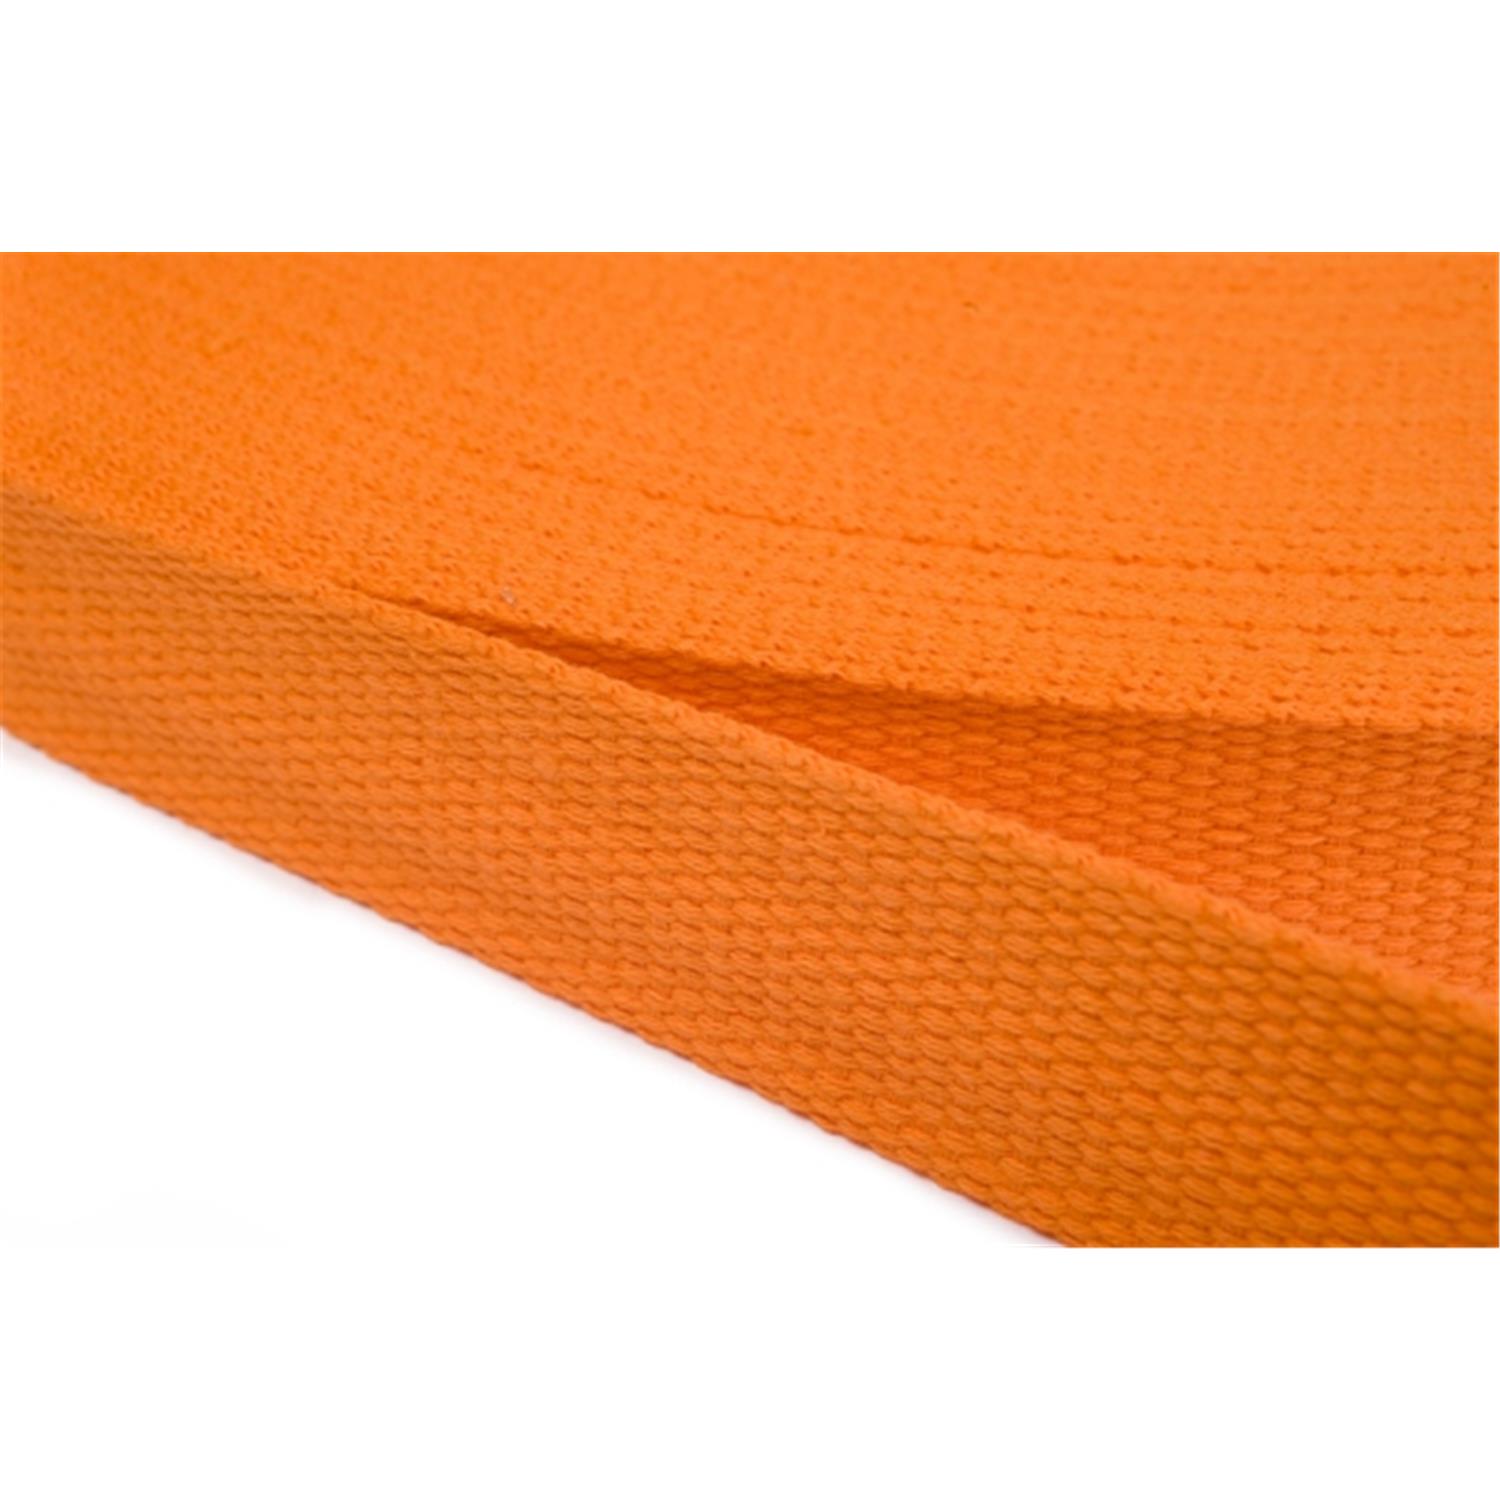 Gurtband aus Baumwolle 50mm in 20 Farben 06 - orange 6 Meter